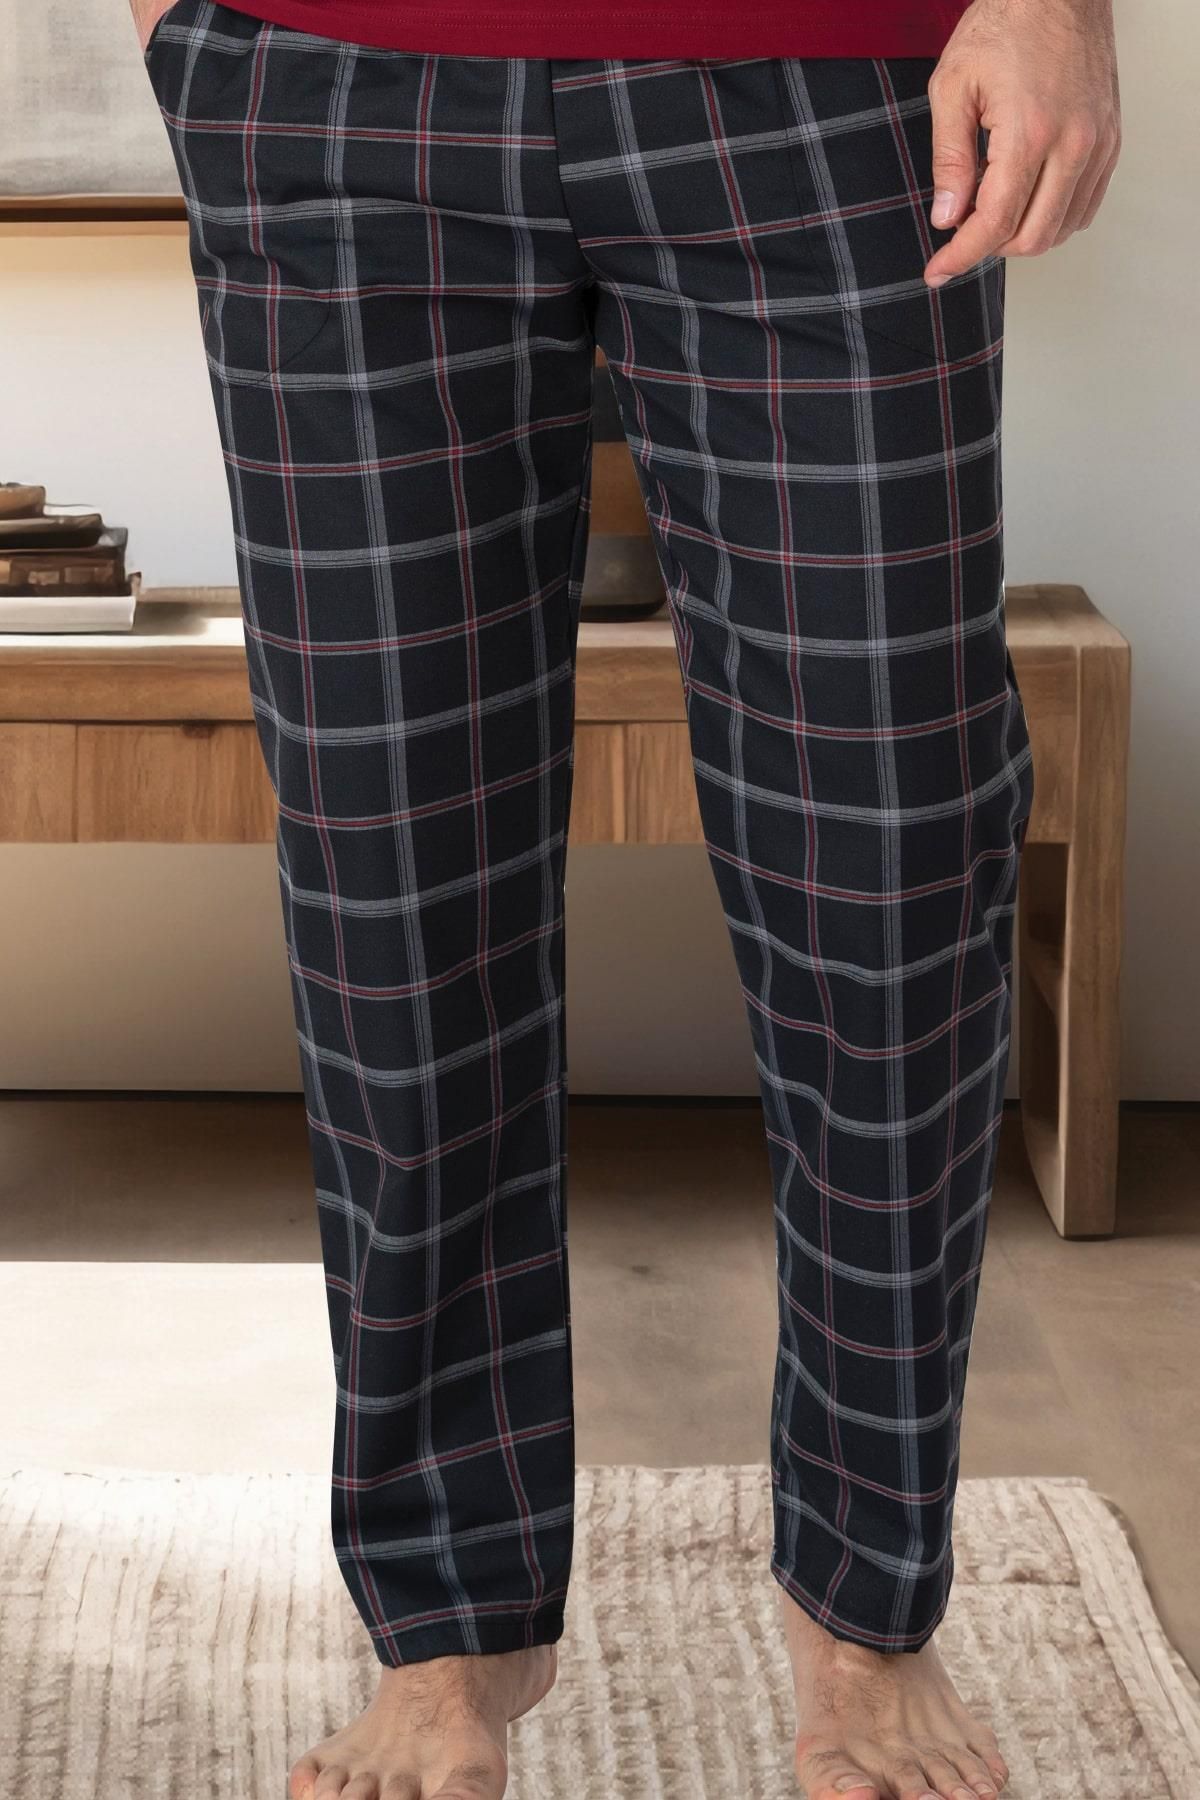 Mecit Pijama Ekoseli Erkek Tek Alt Pijama  %80 Pamuk %20 Viskon Model cep detaylıdır,Dokuma pamuk kumaştan